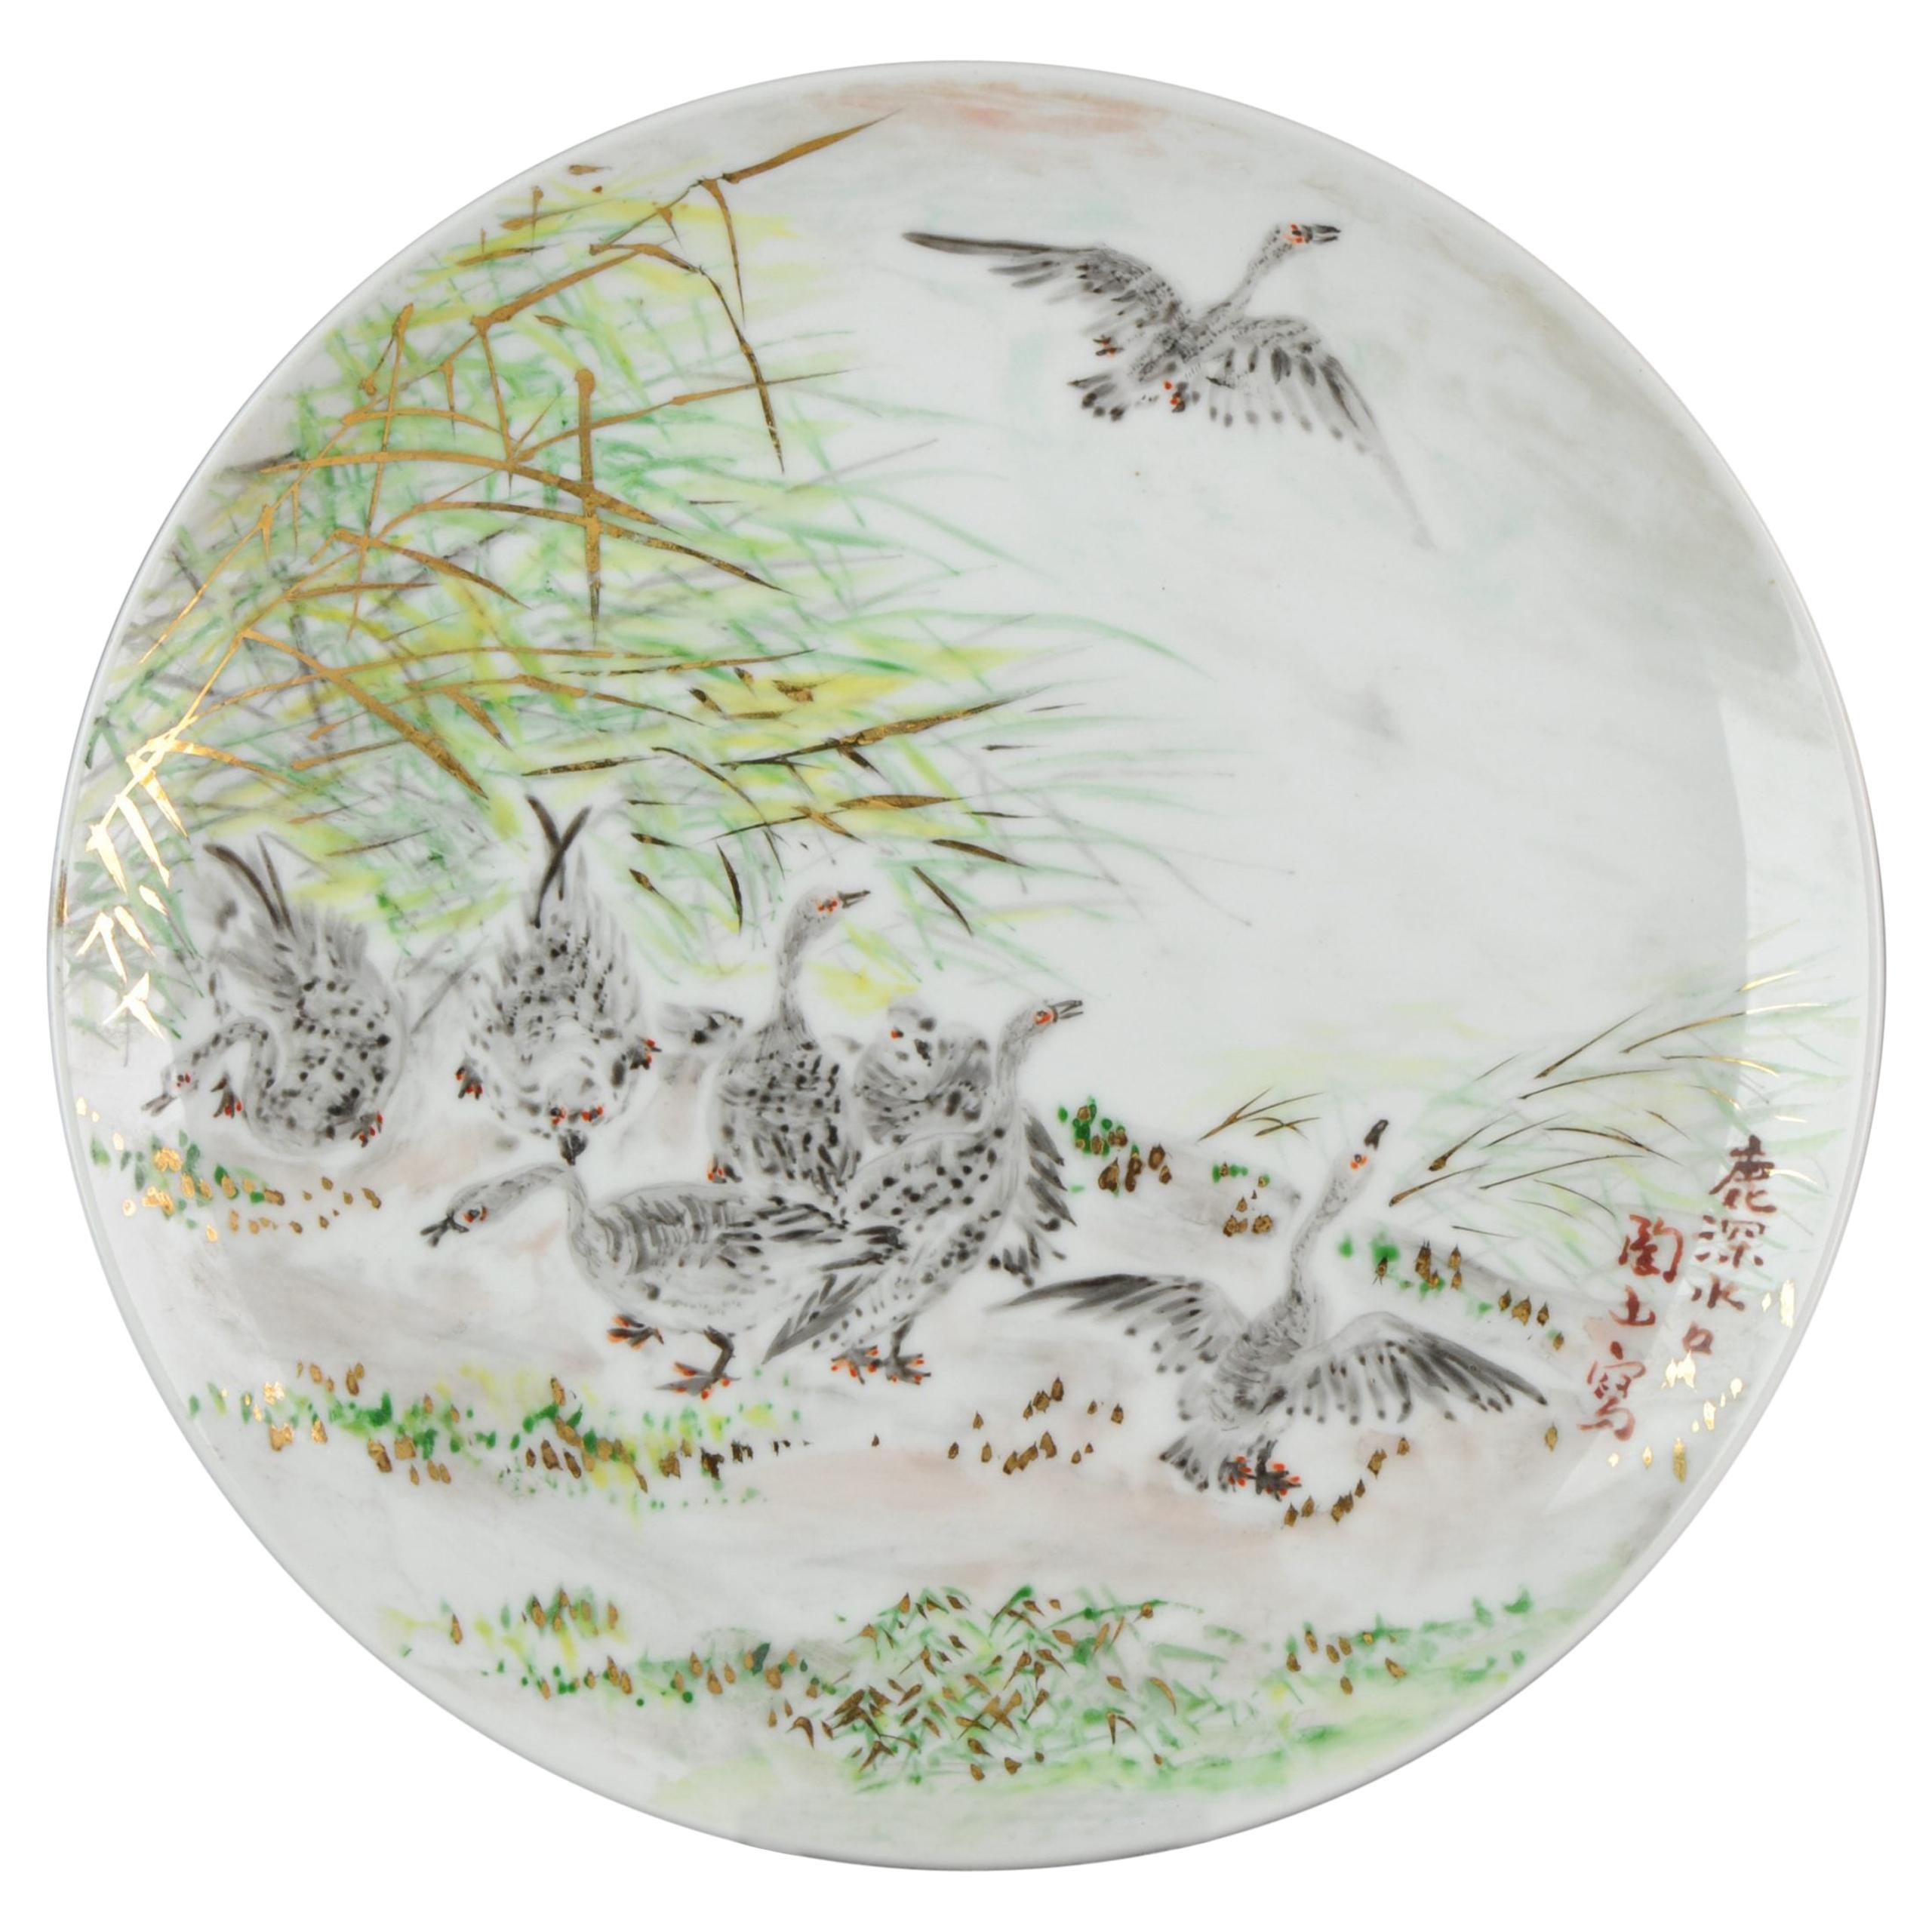 Japanisches Porzellan des 20. und 21. Jahrhunderts, Platzteller mit Vögeln und Hasen in Landschaft